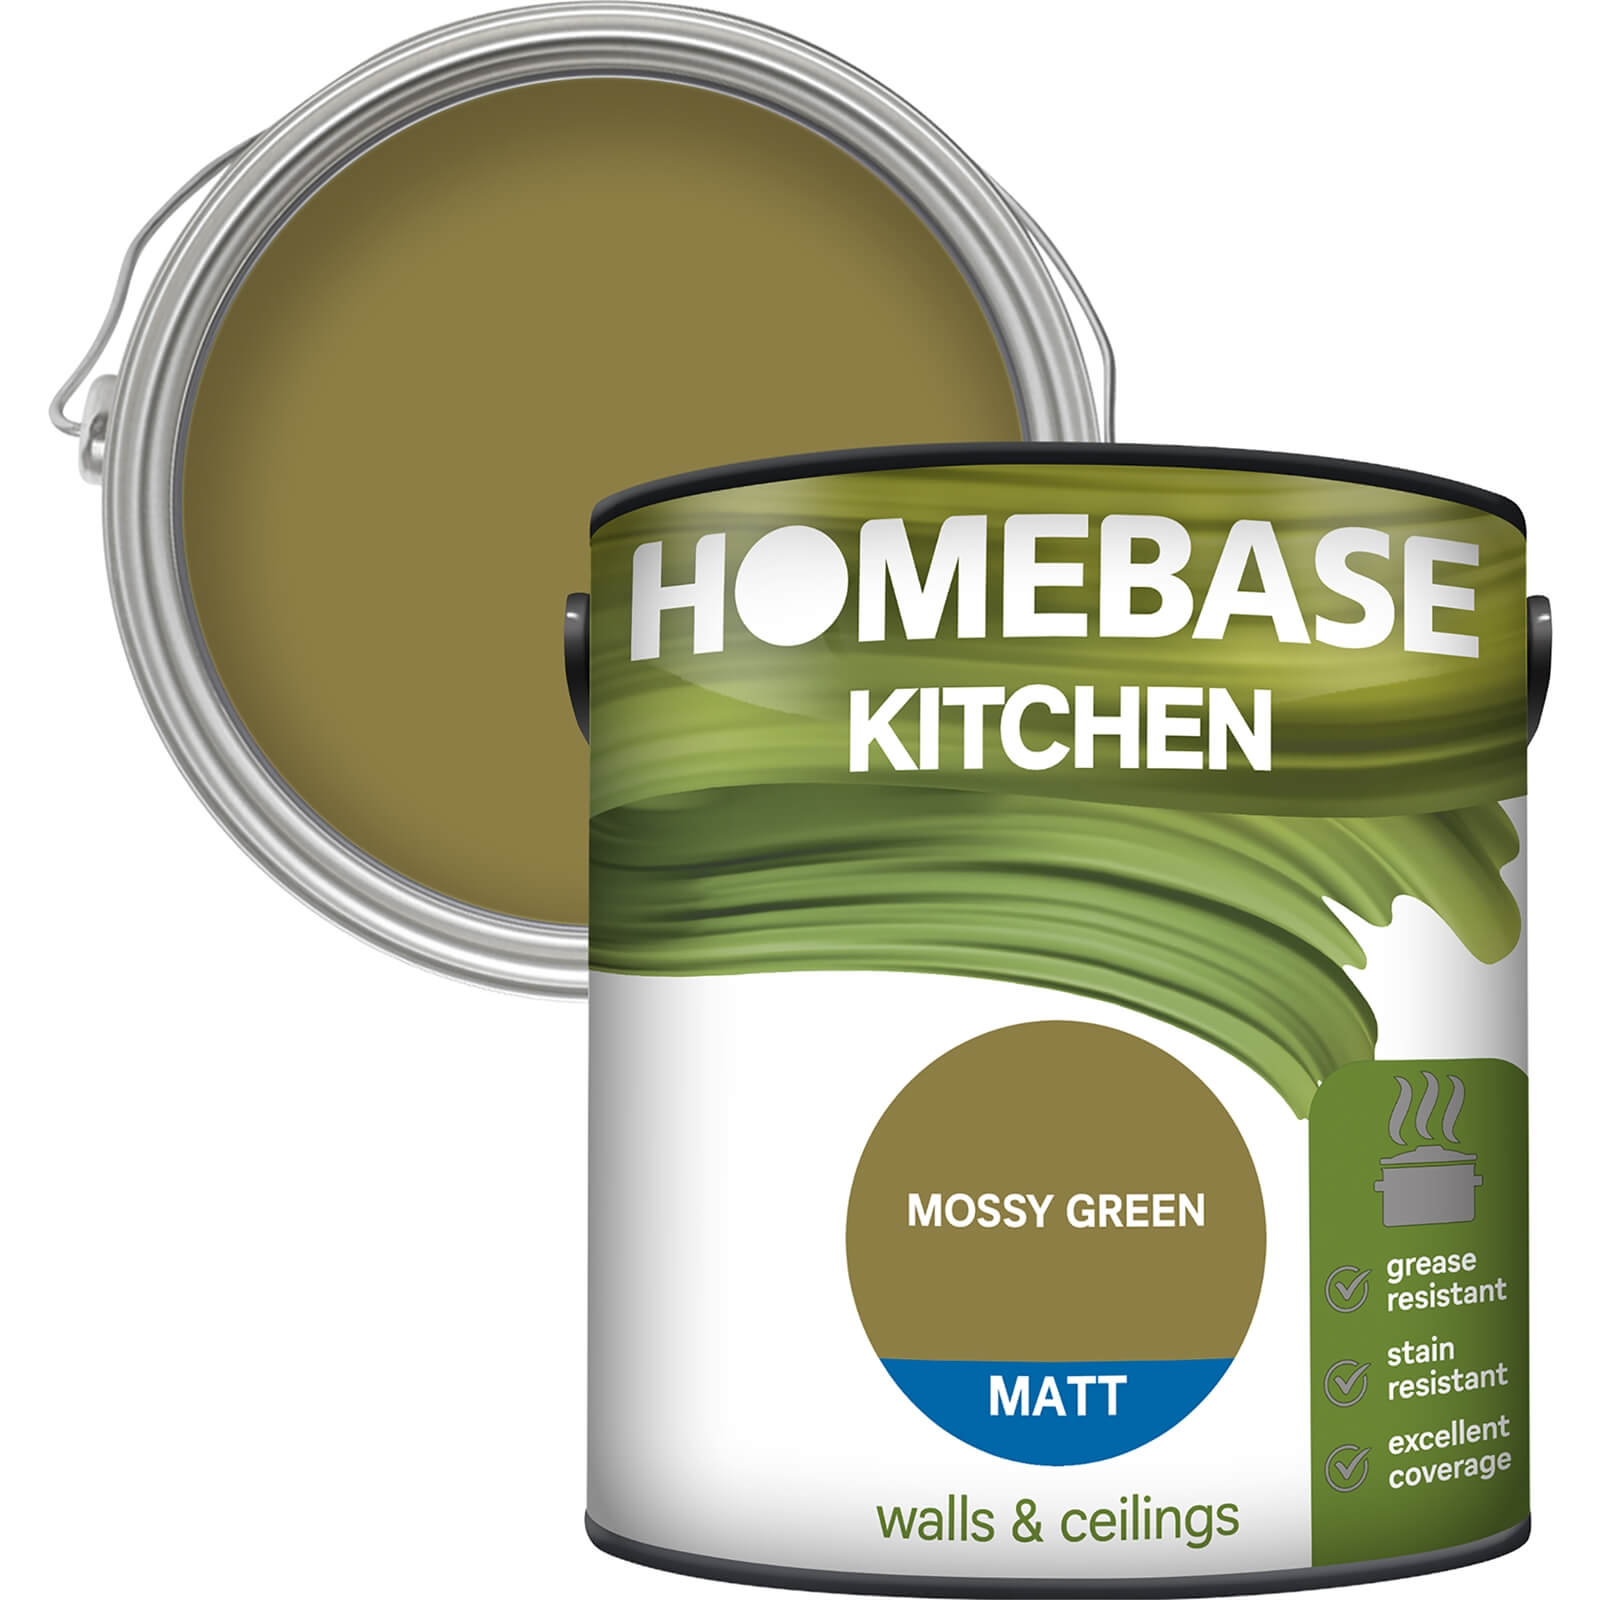 Homebase Kitchen Matt Paint - Moss Green 2.5L